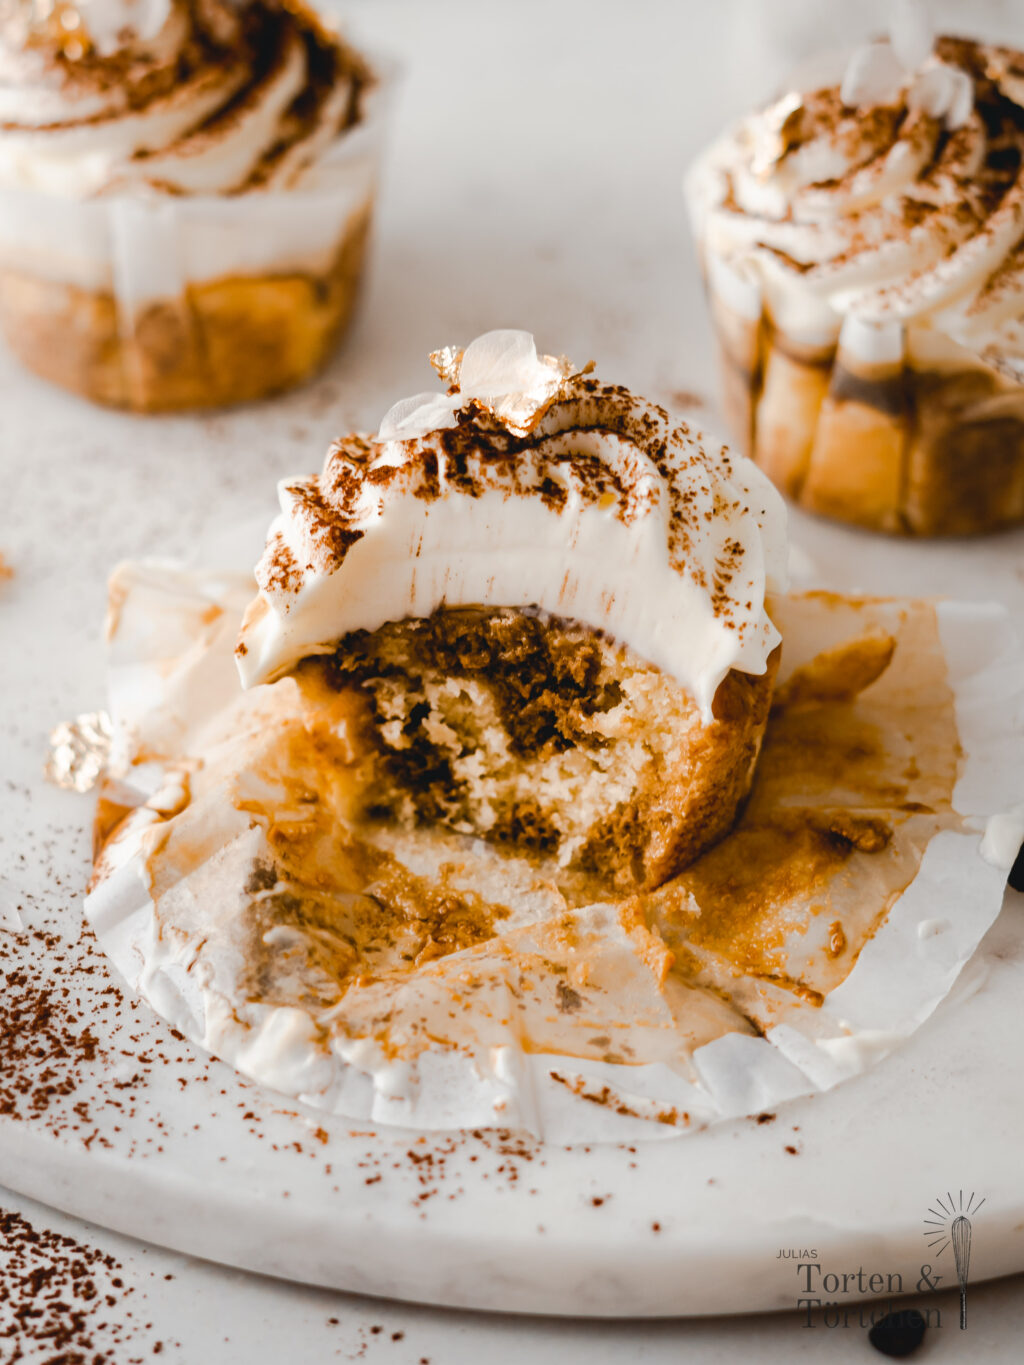 Super einfaches Rezept für cremige Tiramisu Cupcakes mit saftigem Muffin, samtigem Mascarpone Topping und herben Espresso. Schnell gemacht und ohne Buttercreme! #Cupcakes #Rezept #Backen #Tiramisu #Kuchen